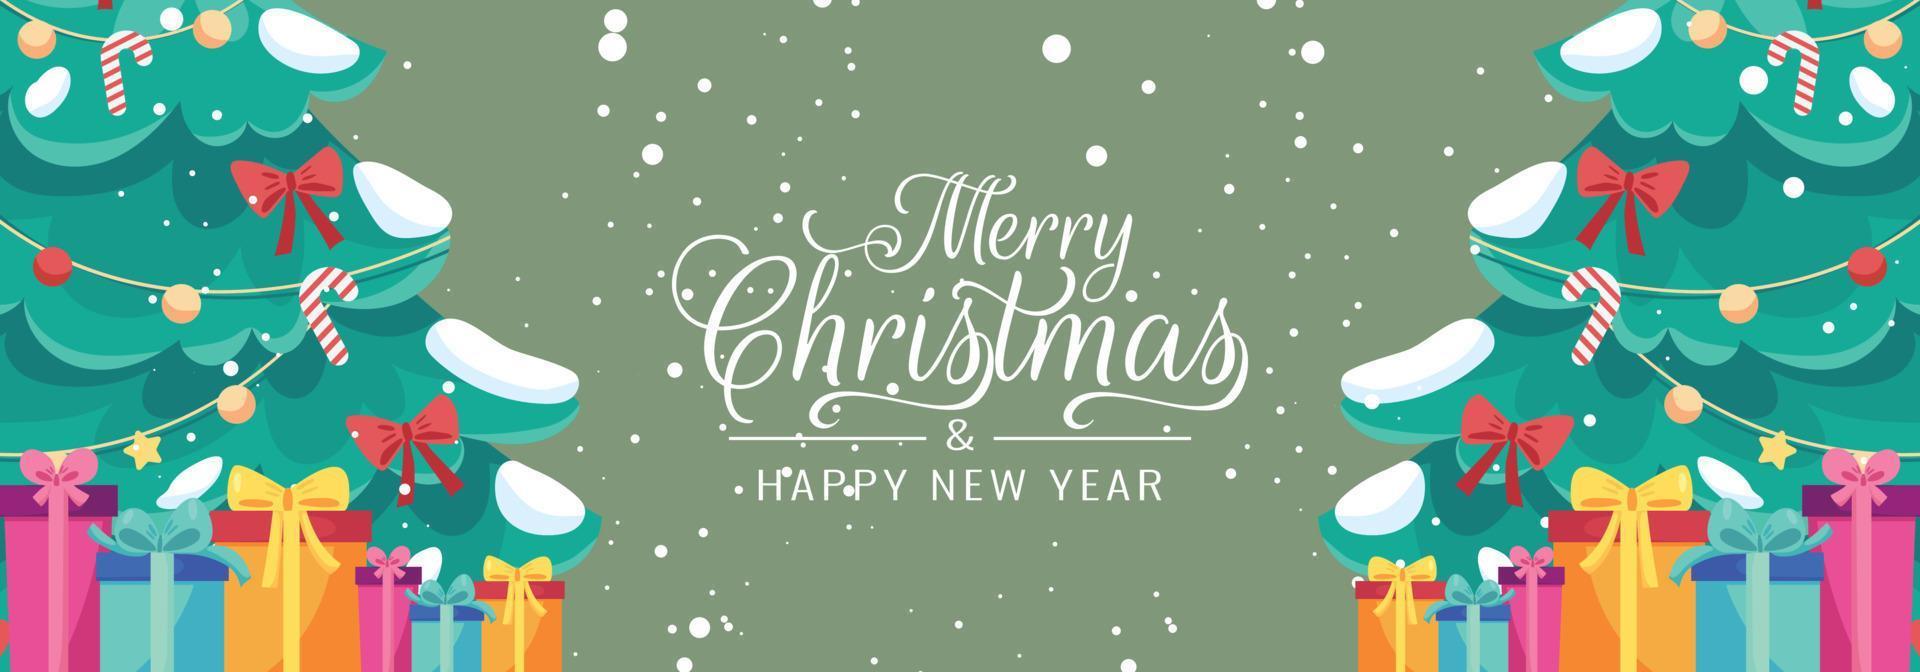 Feliz Navidad y feliz año nuevo tarjetas de felicitación.Fondo, diseño moderno para publicidad, marca, tarjetas de felicitación, portadas, carteles, pancartas. ilustración vectorial vector